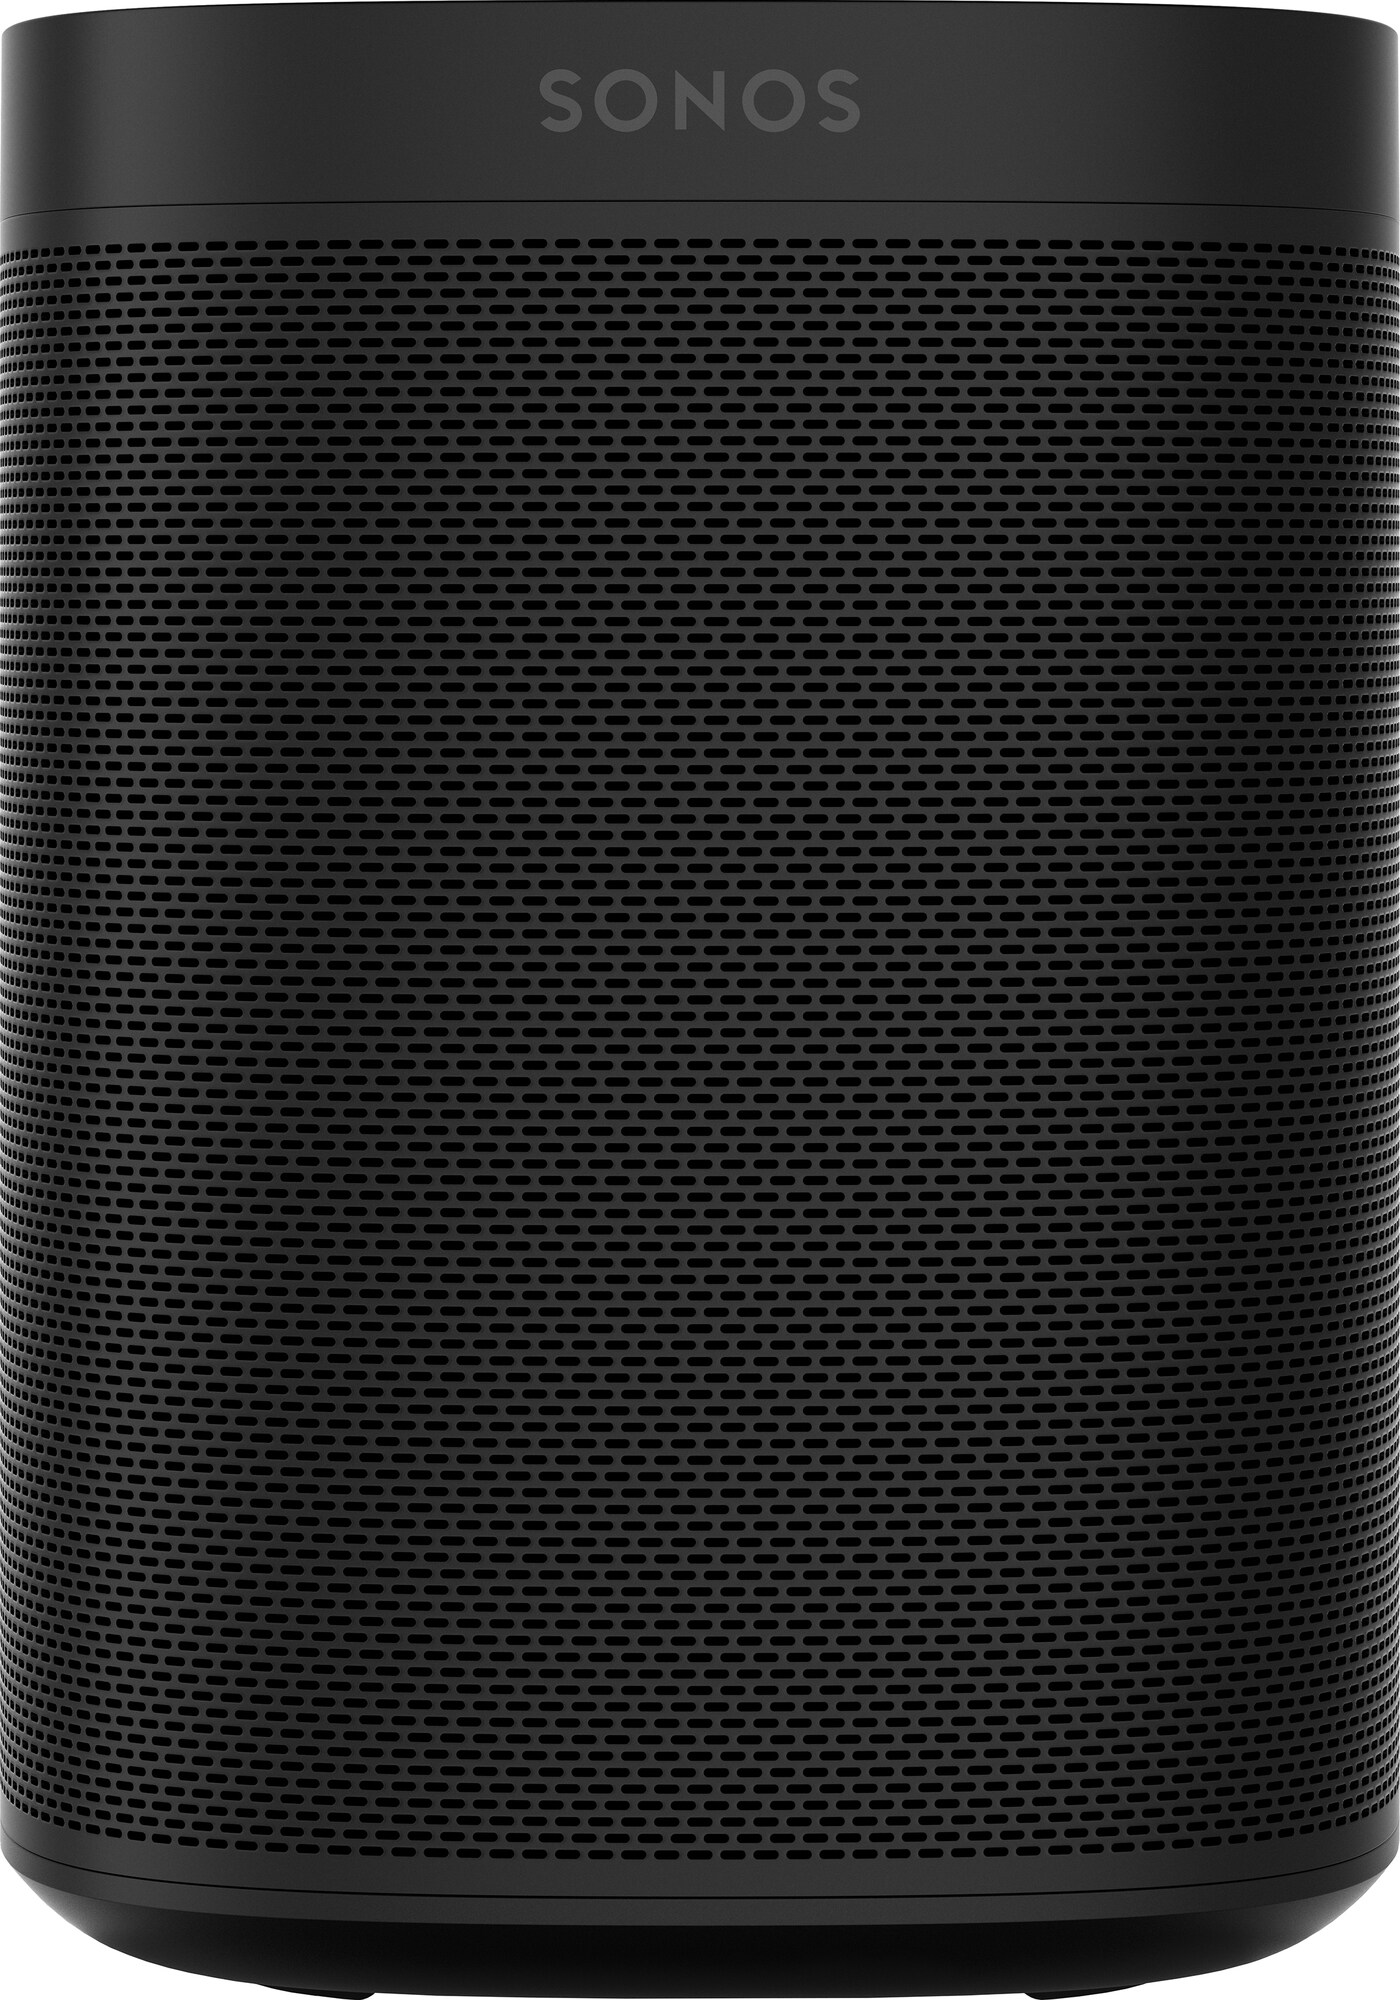 Sonos One SL högtalare (svart) - HiFi högtalare - Elgiganten